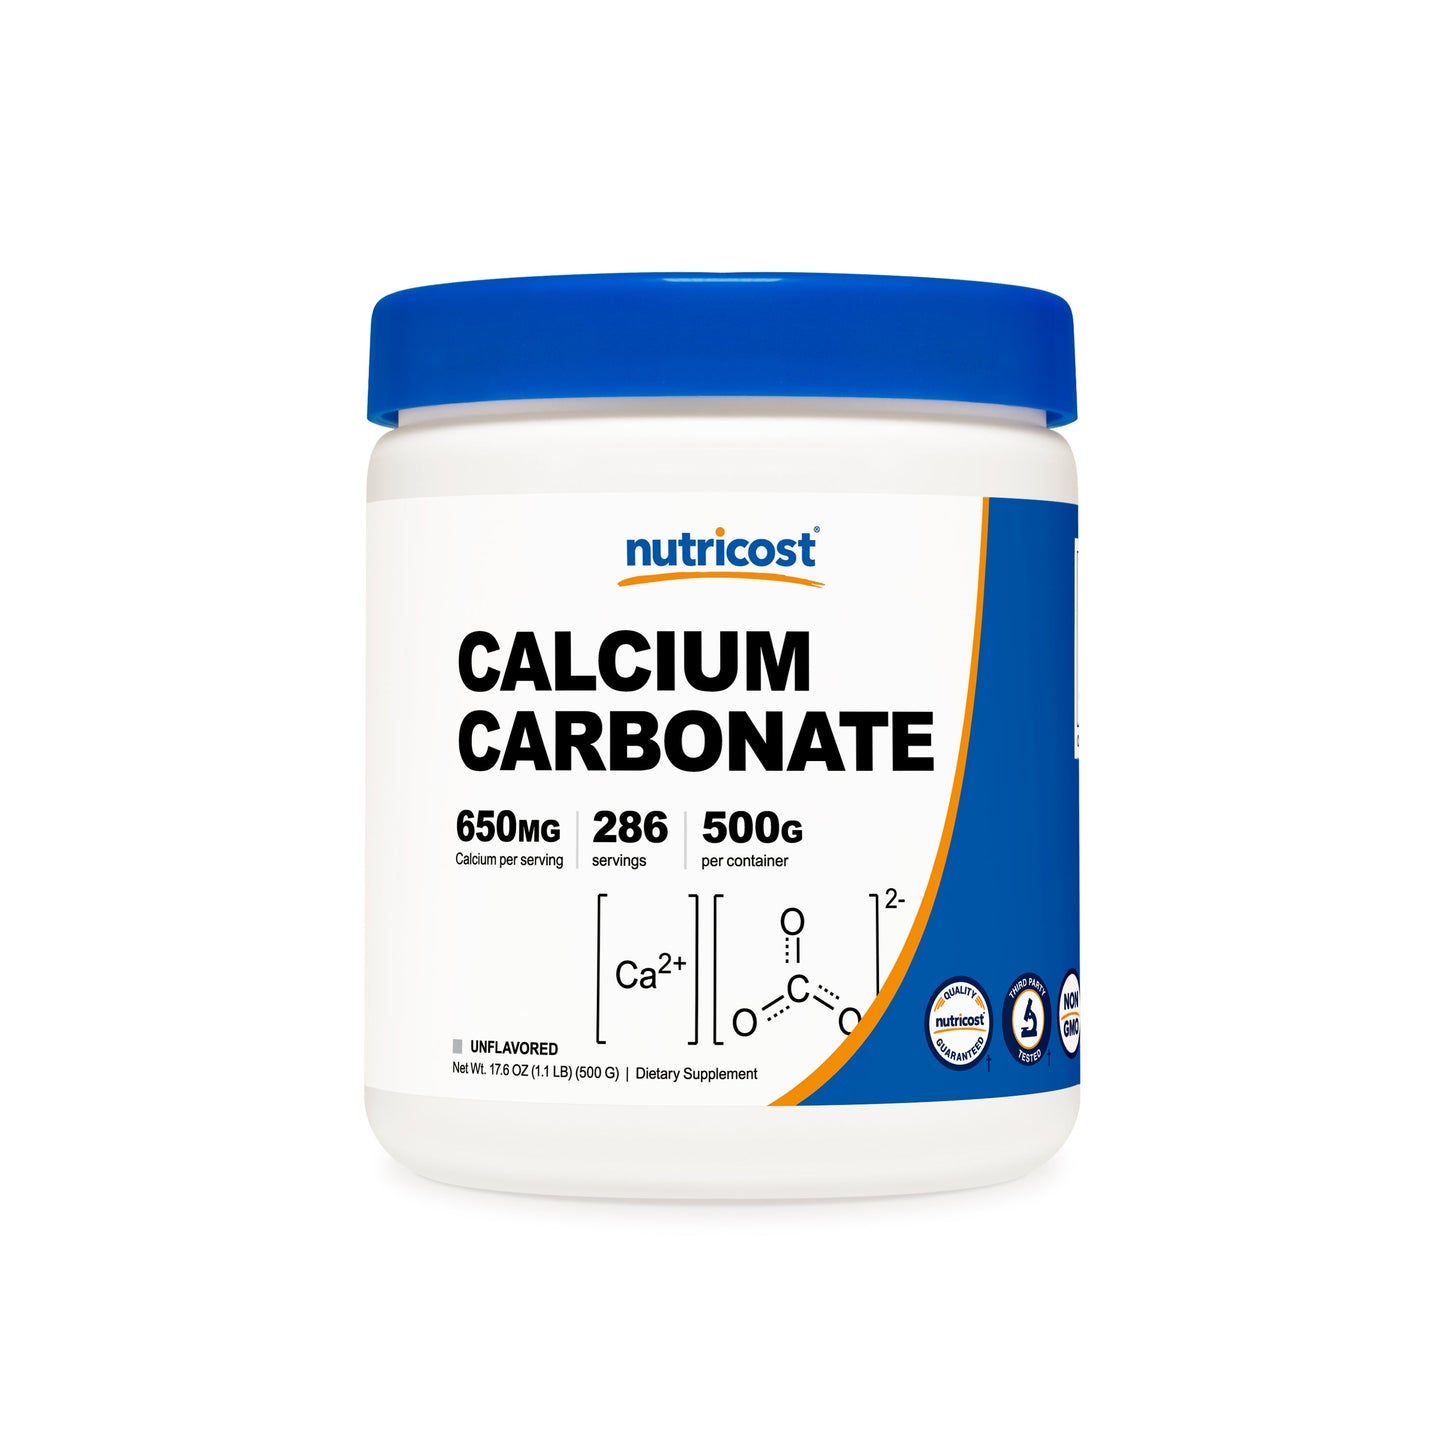 Nutricost Calcium Carbonate Powder